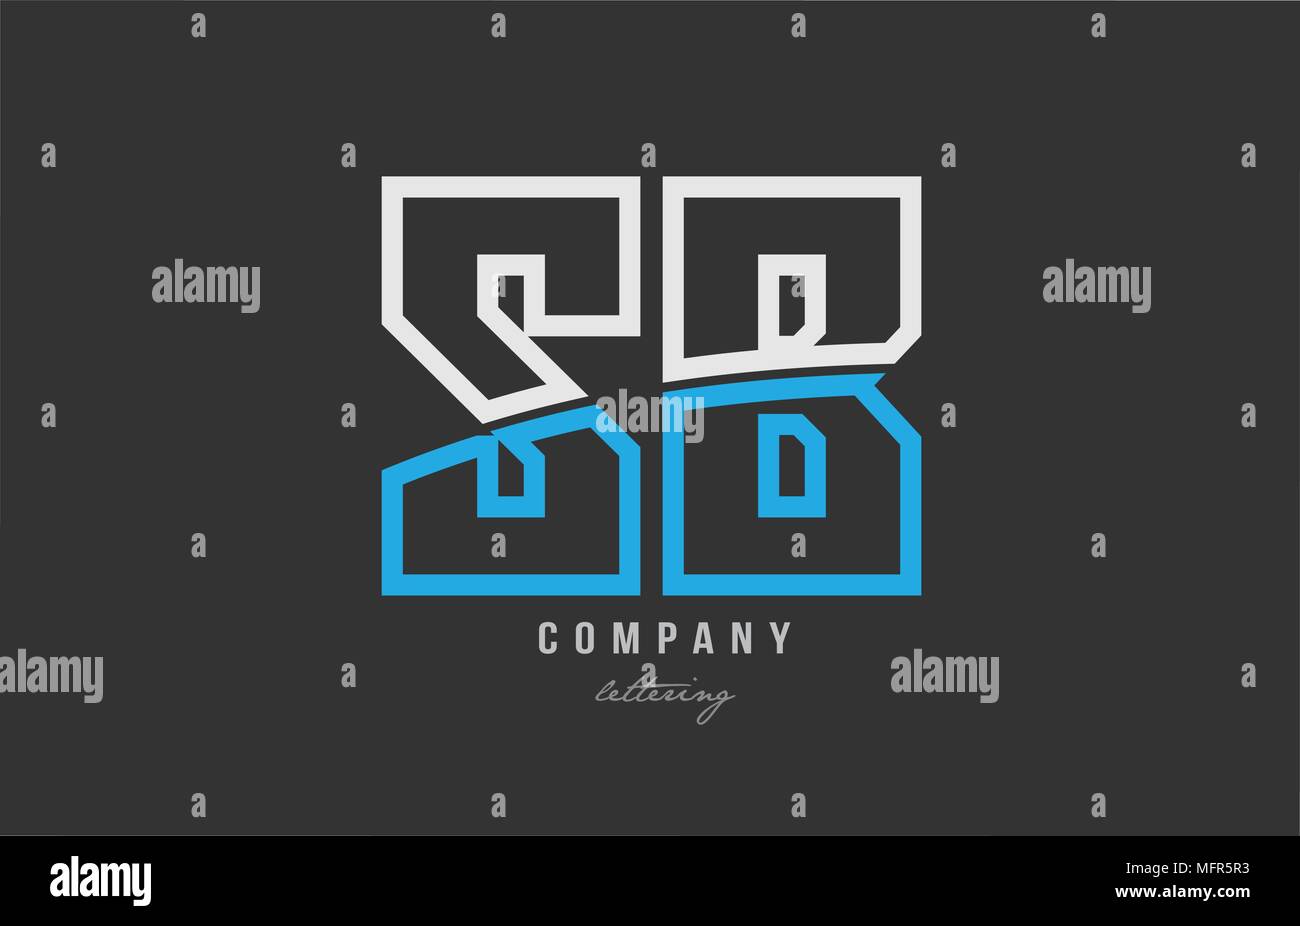 Weiß Blau Buchstaben sb s b logo Kombination Design auf schwarzem Hintergrund geeignet für ein Unternehmen oder ein Geschäft Stock Vektor